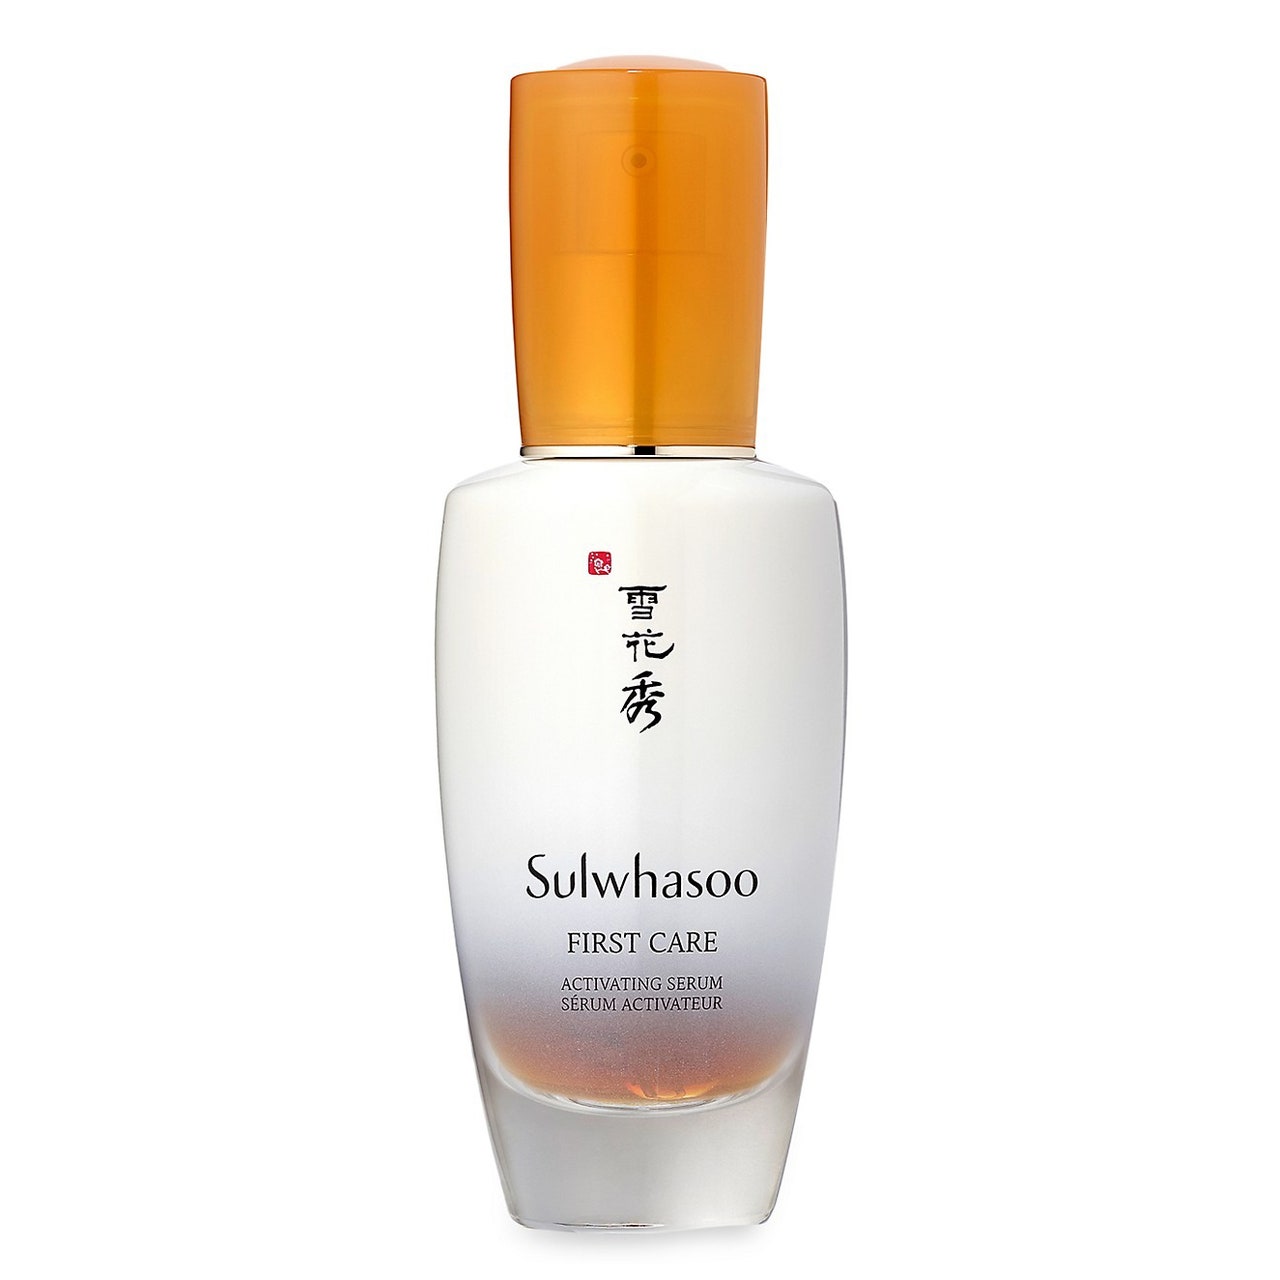 Sulwhasoo First Care Activating Serum große weiße, abgerundete Serumflasche mit orangefarbenem Verschluss auf weißem Hintergrund